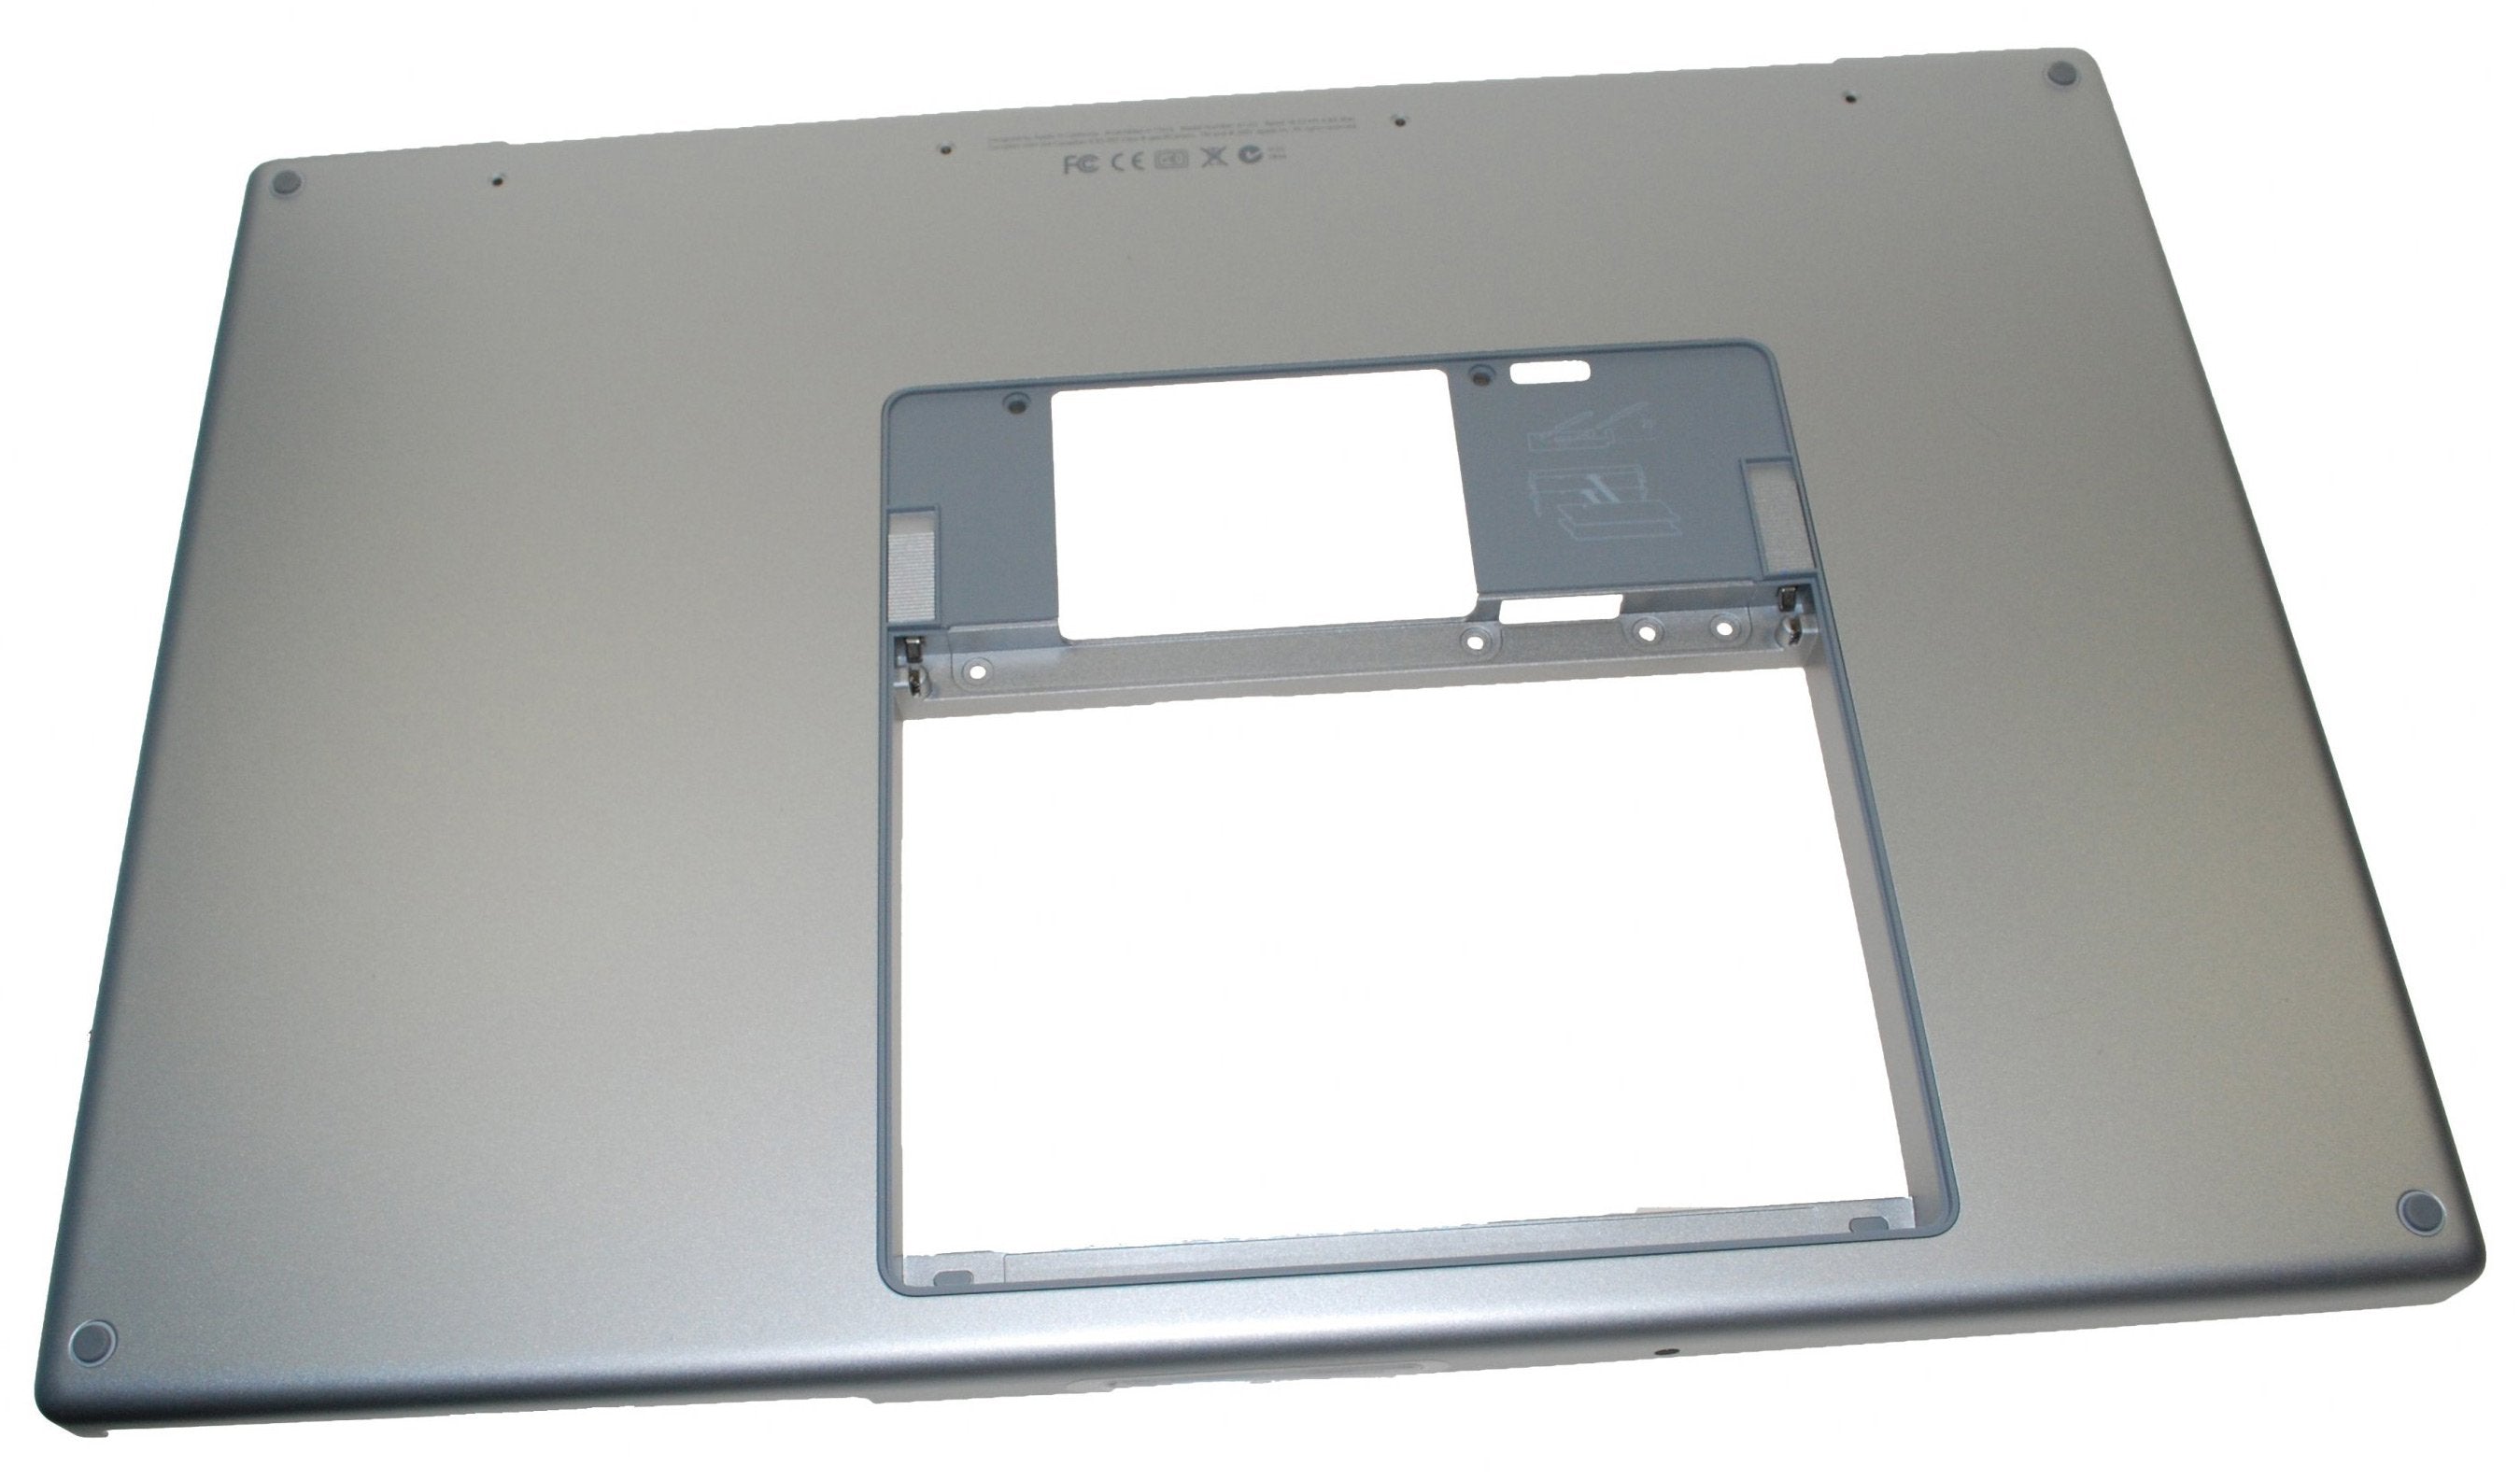 MacBook Pro 17" (Model A1212) Lower Case